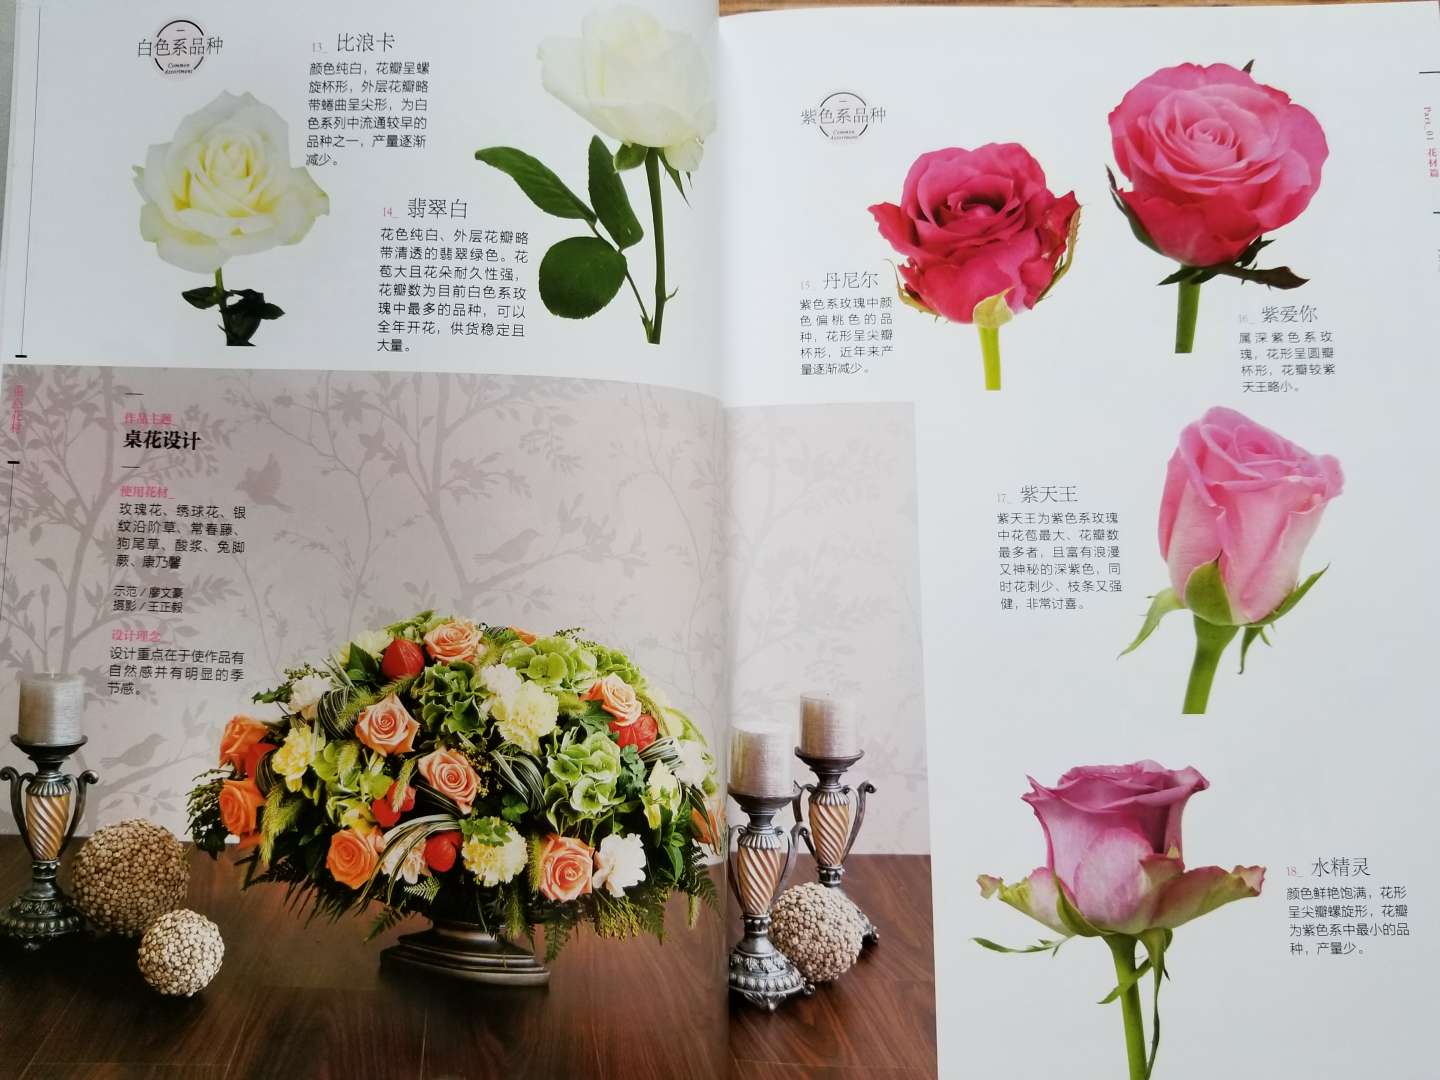 印刷清晰，有各种花材的介绍，及花艺设计范例。内容挺充实的，值得一看。